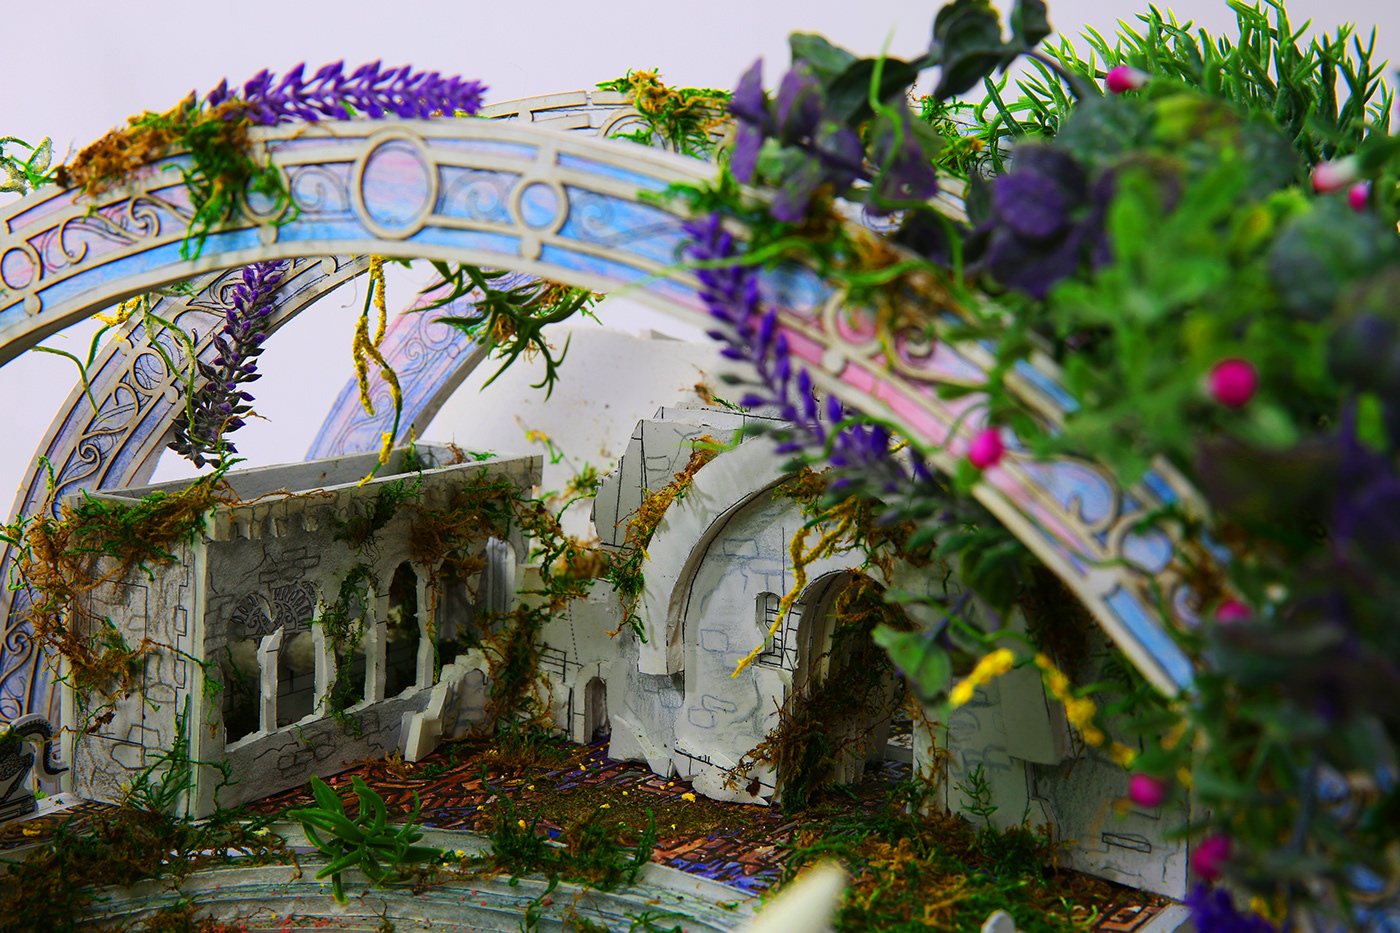 fantasy Film   set design  The Abarat Clive Barker Overgrown Vegetation palace Model Making concept design